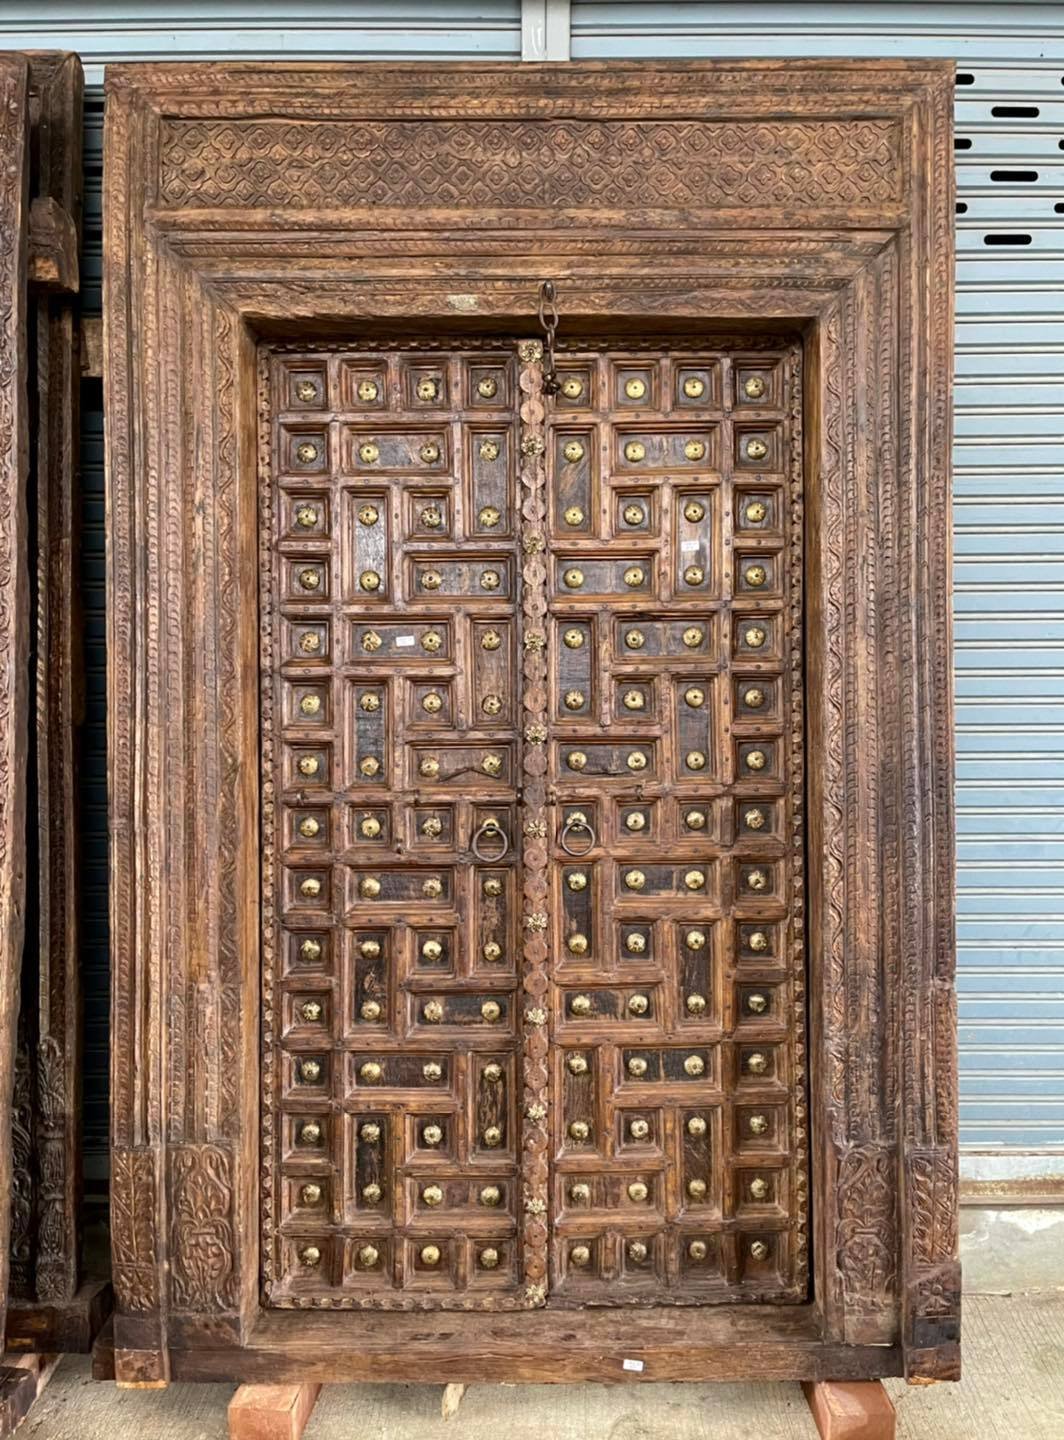 2XL10 ประตูอินเดียโบราณแต่งทองเหลืองเต็มบาน